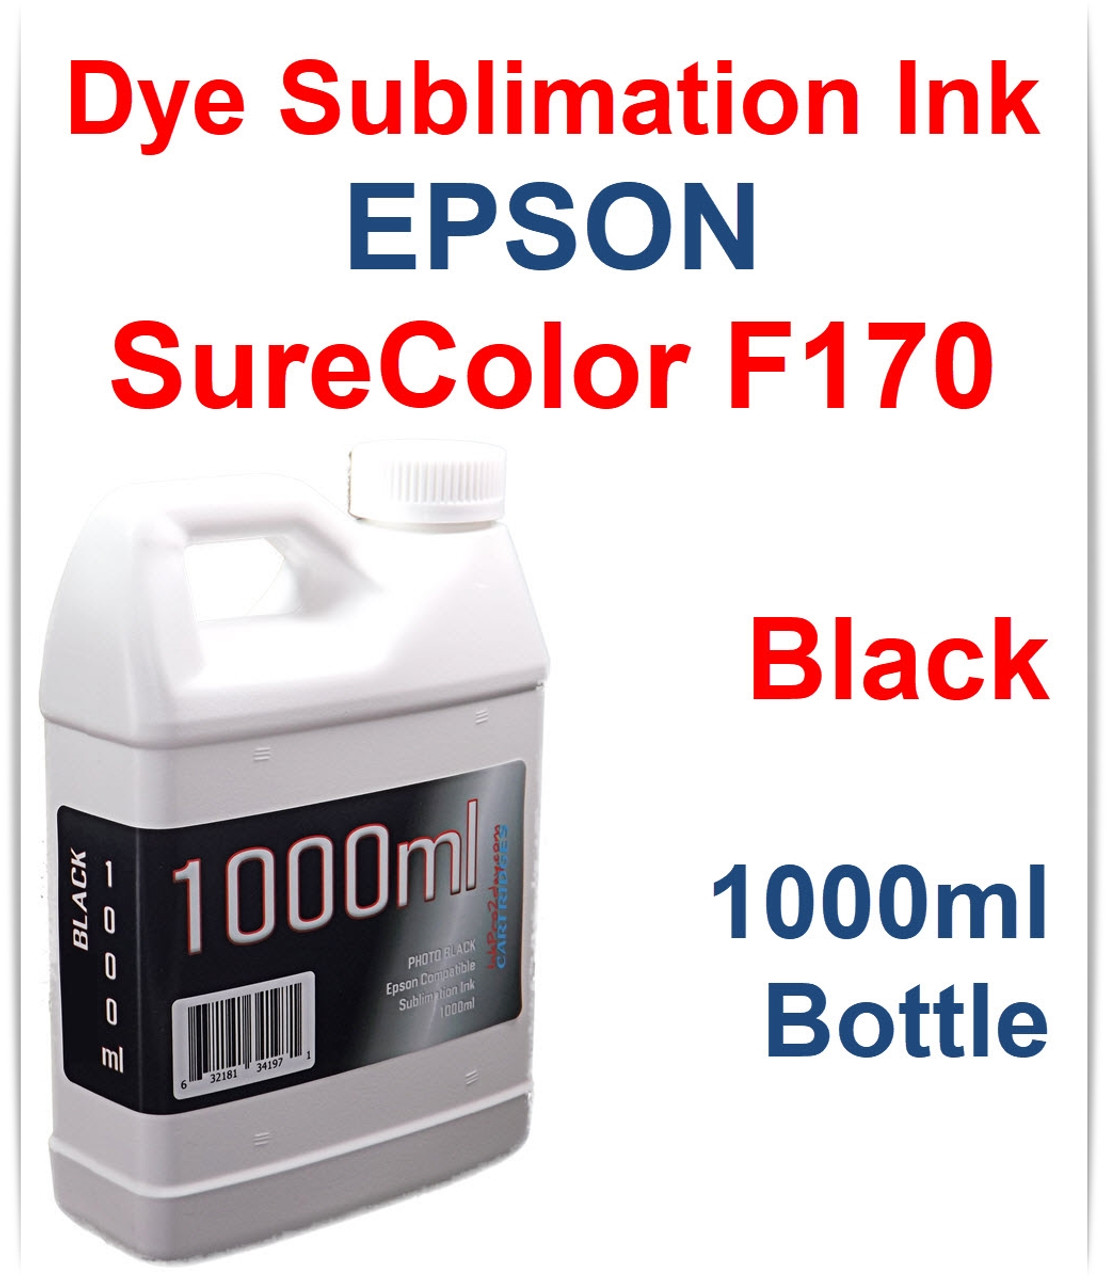 Black 1000ml bottle Dye Sublimation Ink for EPSON SureColor F170 printer